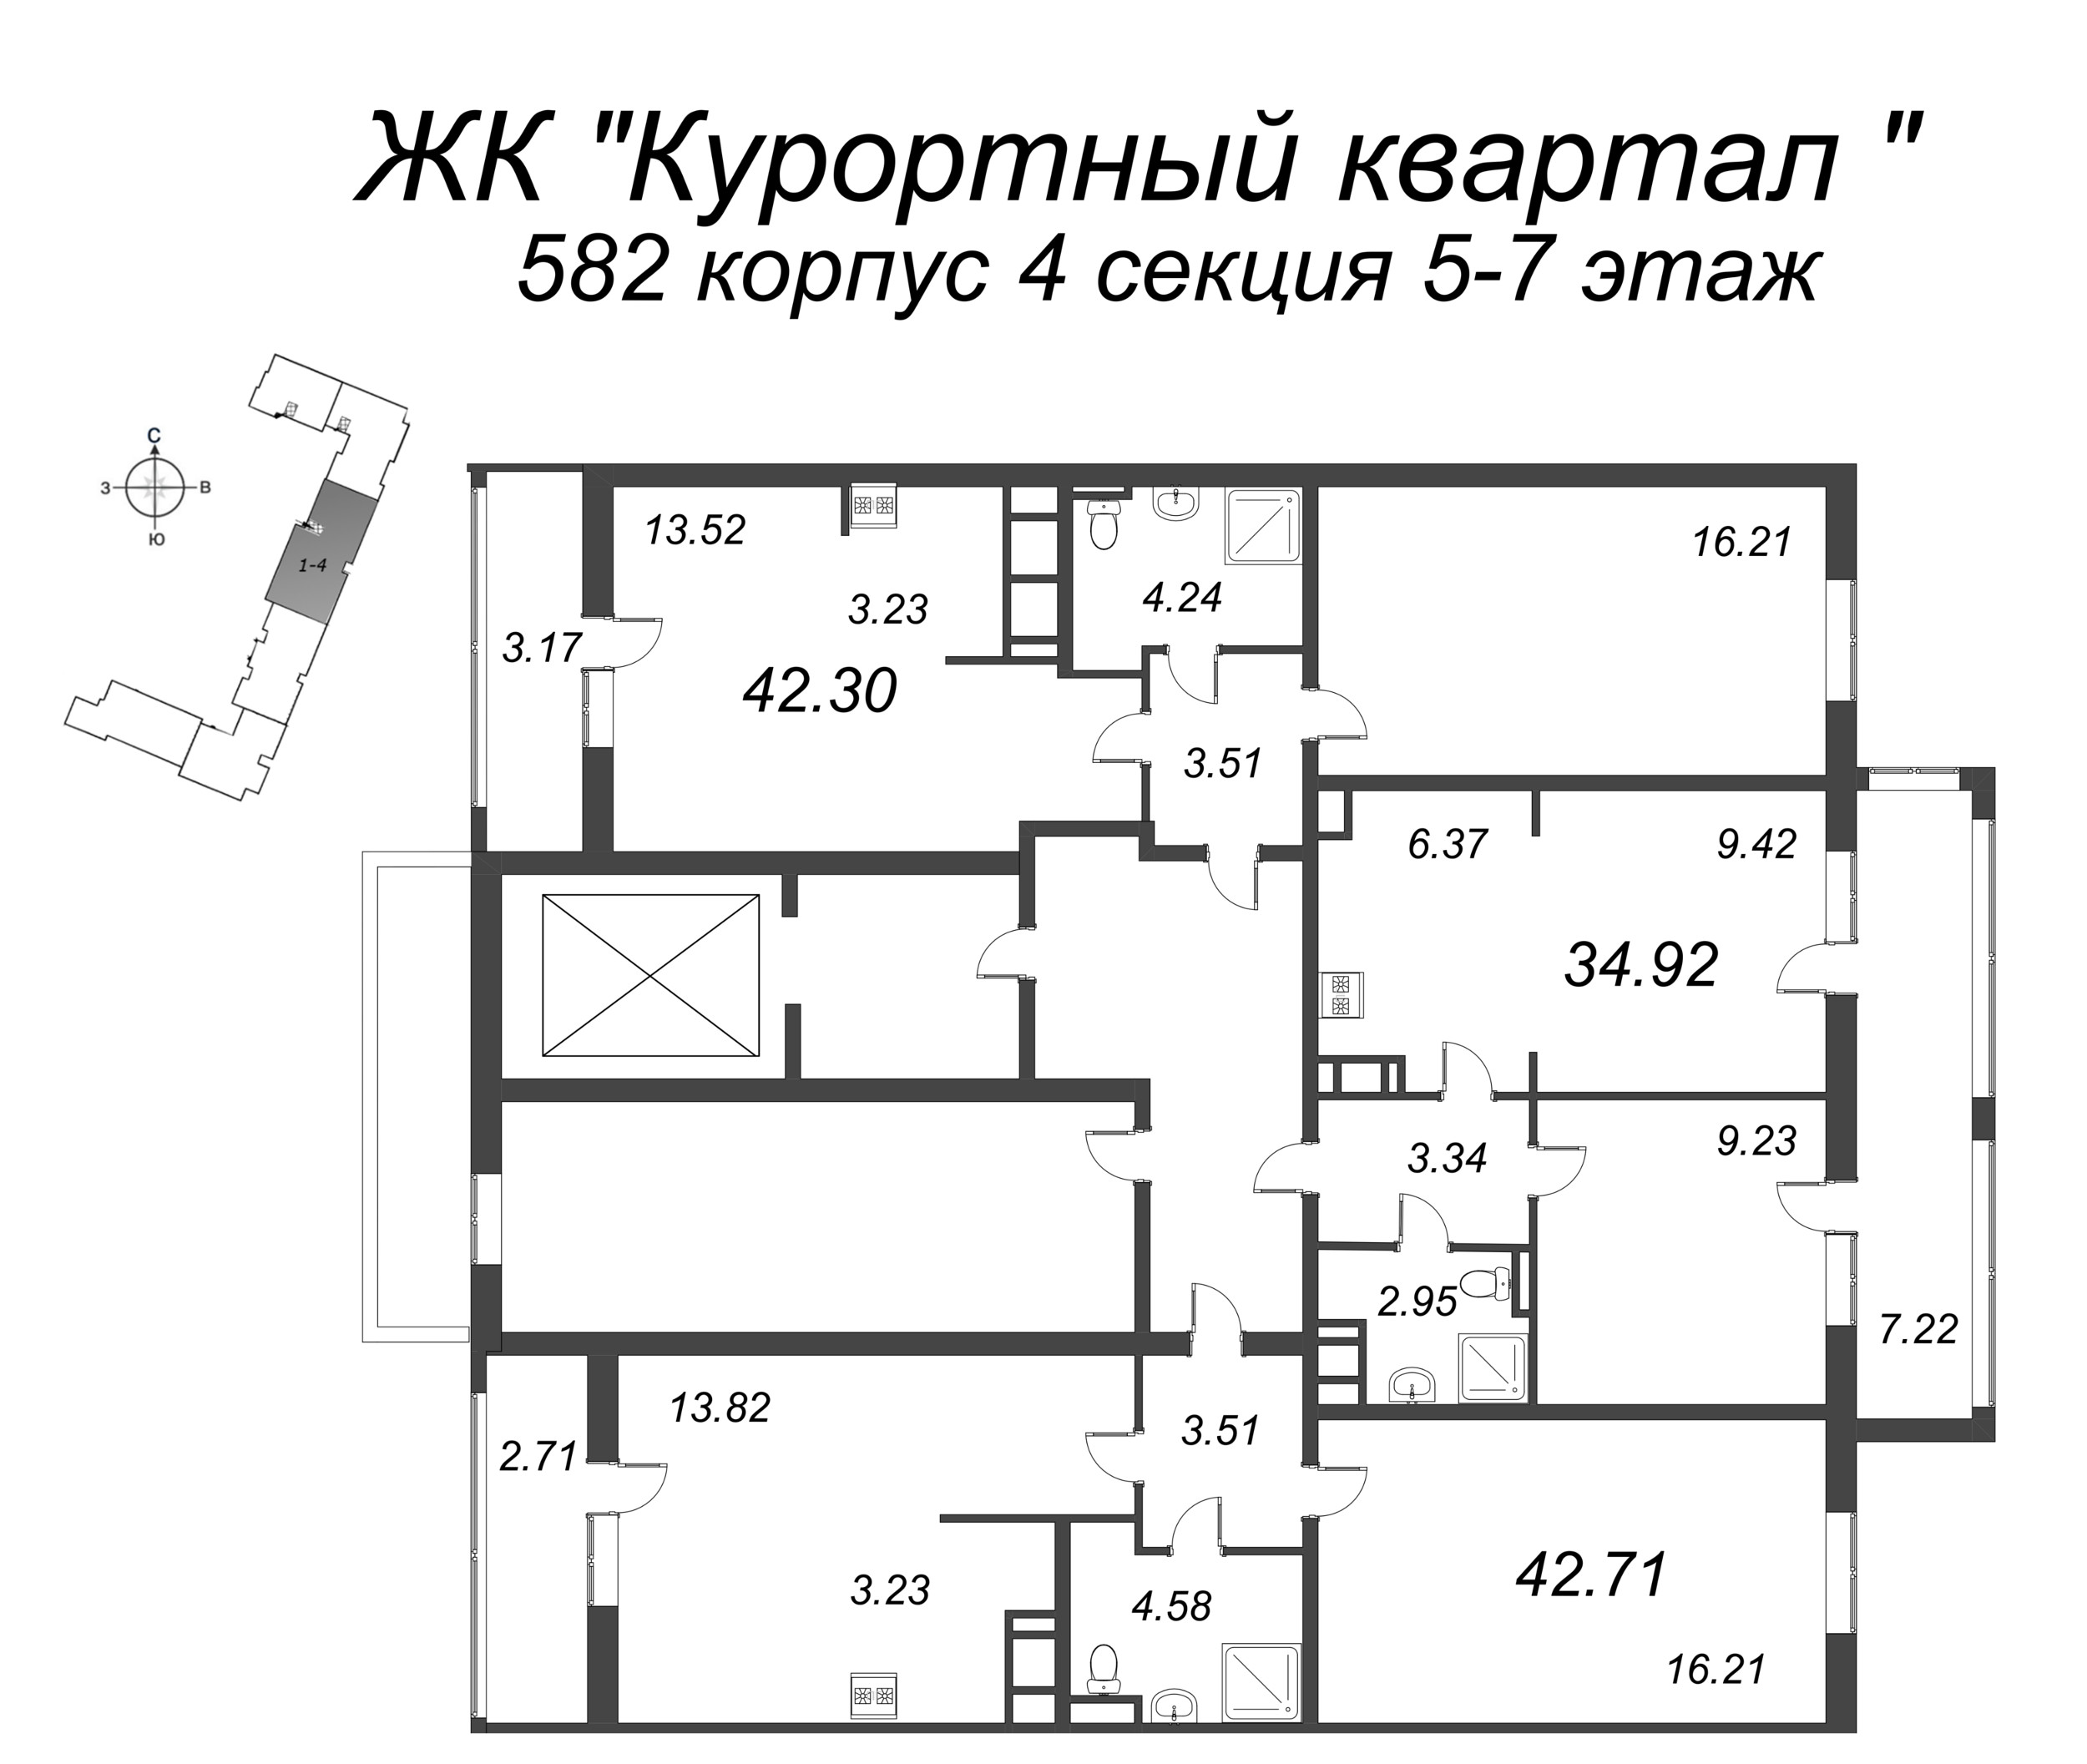 2-комнатная (Евро) квартира, 34.92 м² в ЖК "Курортный Квартал" - планировка этажа